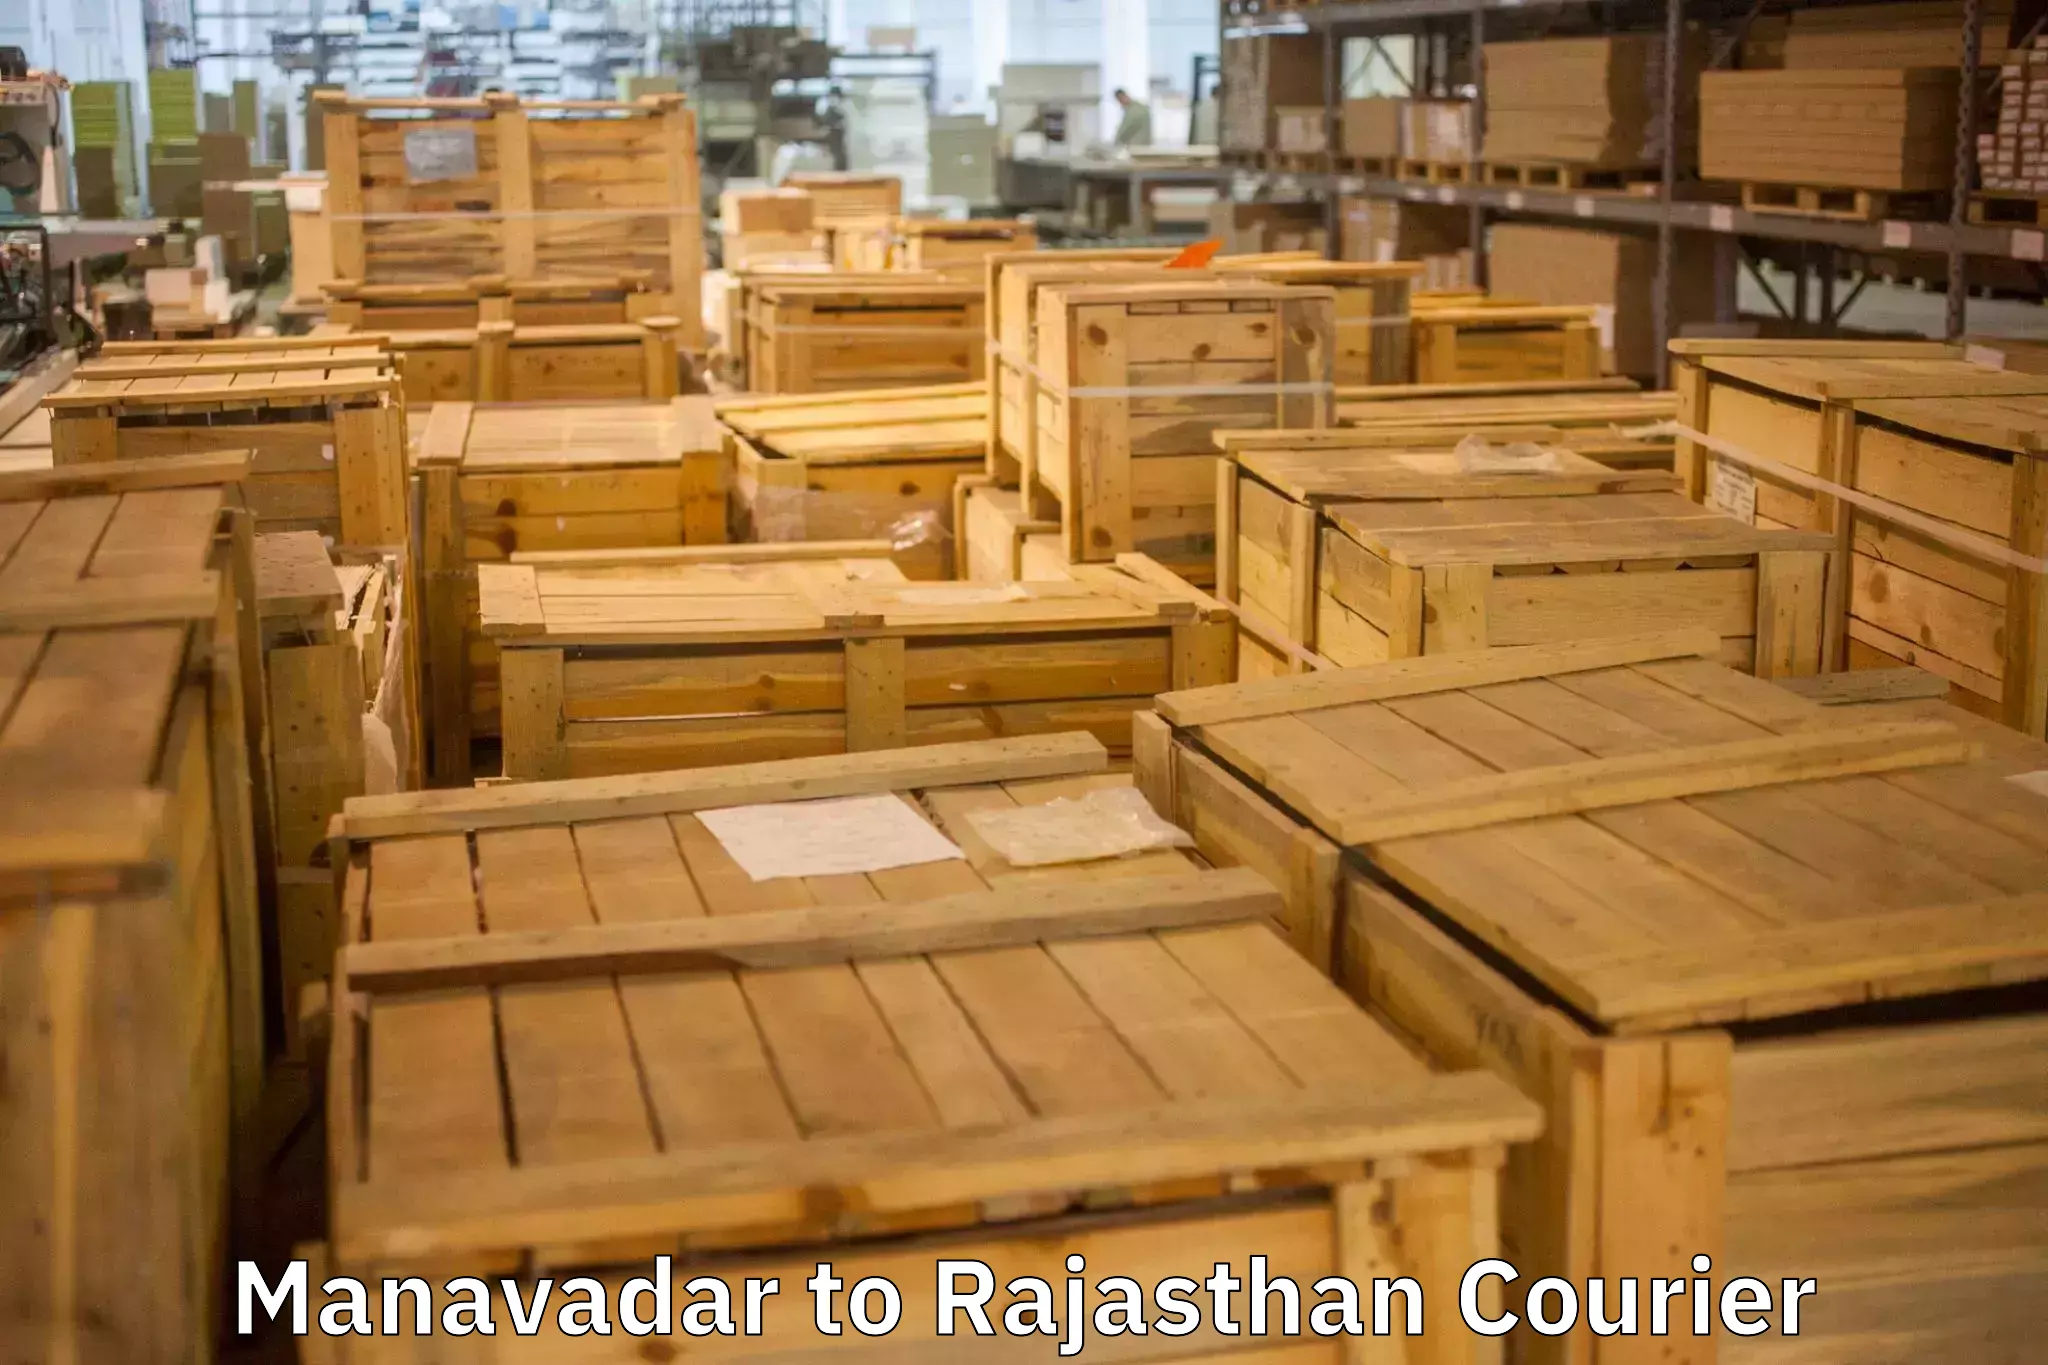 Furniture transport experts Manavadar to Gudha Gorji